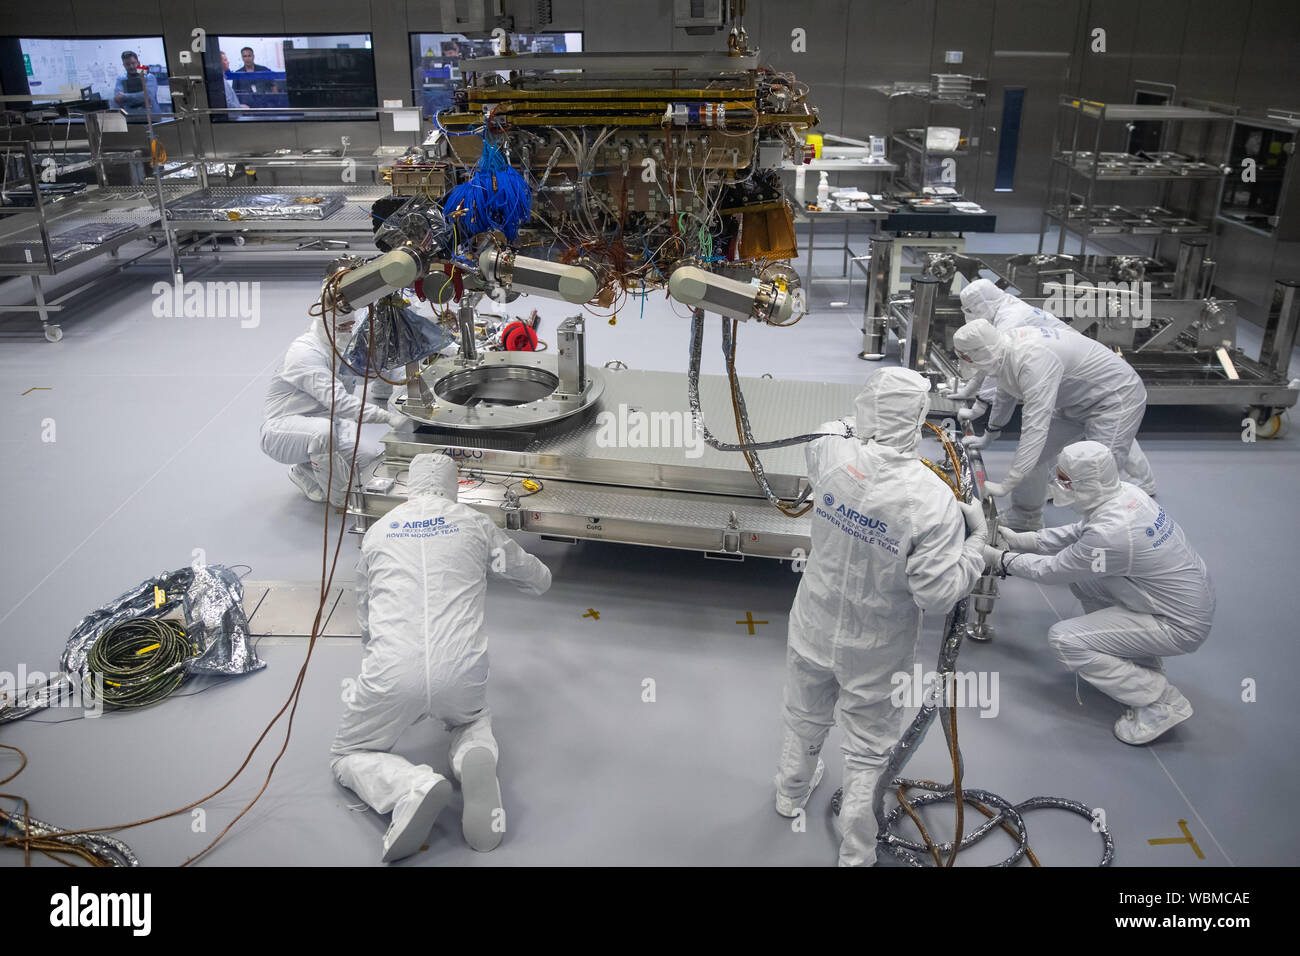 exomars rover de la Agencia Espacial Europea está en preparación para dejar Airbus en Stevenage. El exomars 2020 rover Rosalind Franklin es el primer rover planetario de Europa que buscará signos de la vida pasada o presente en Marte. Foto de stock